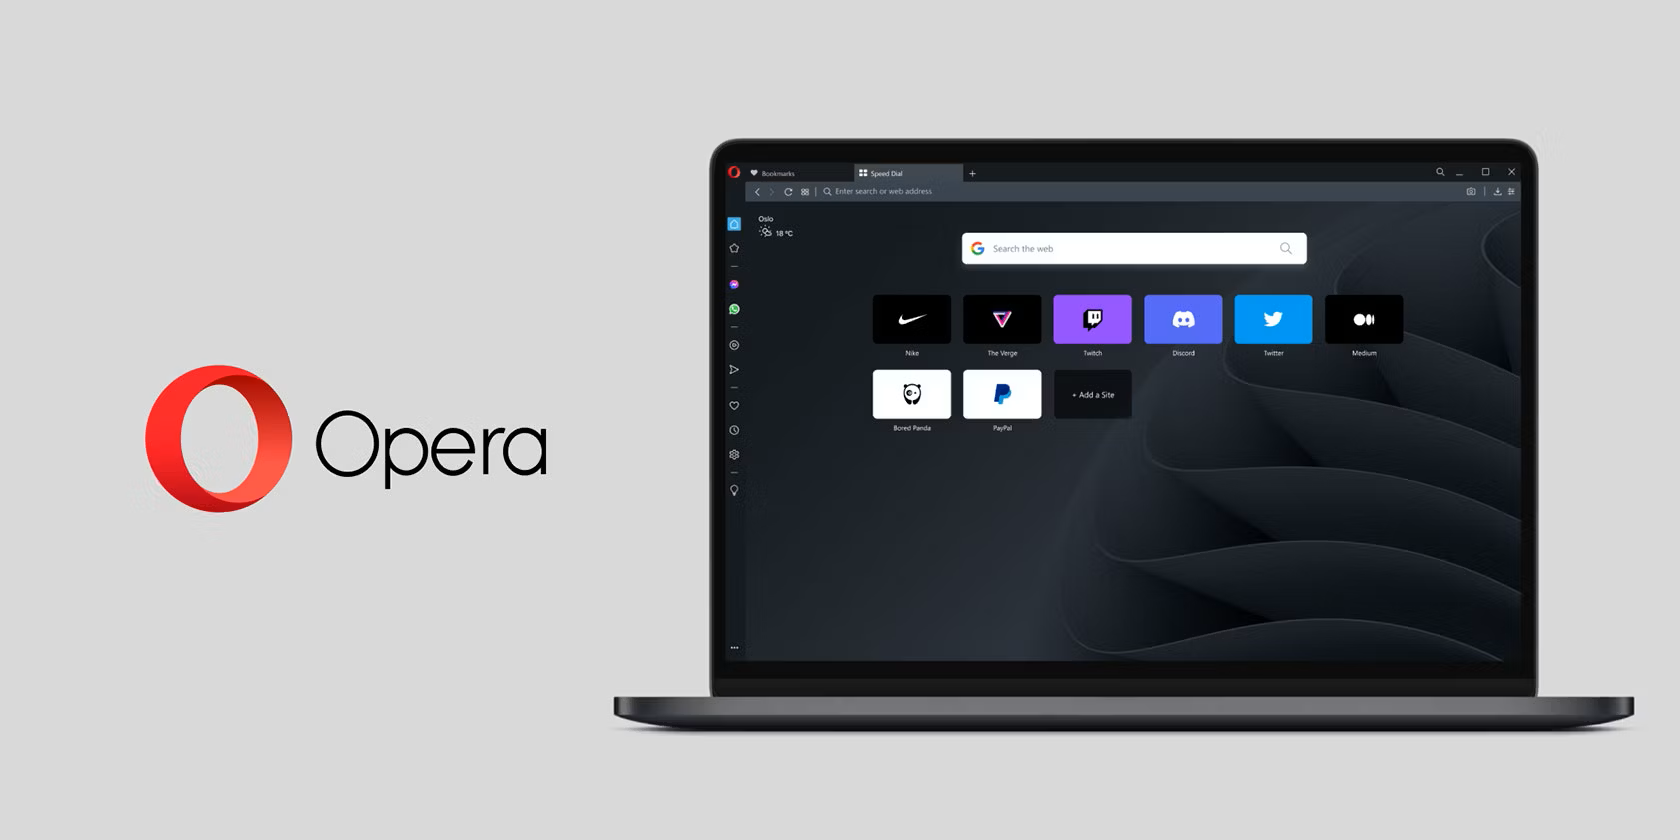 Opera werkt zijn browser bij om ondersteuning voor lokale AI-modellen toe te voegen